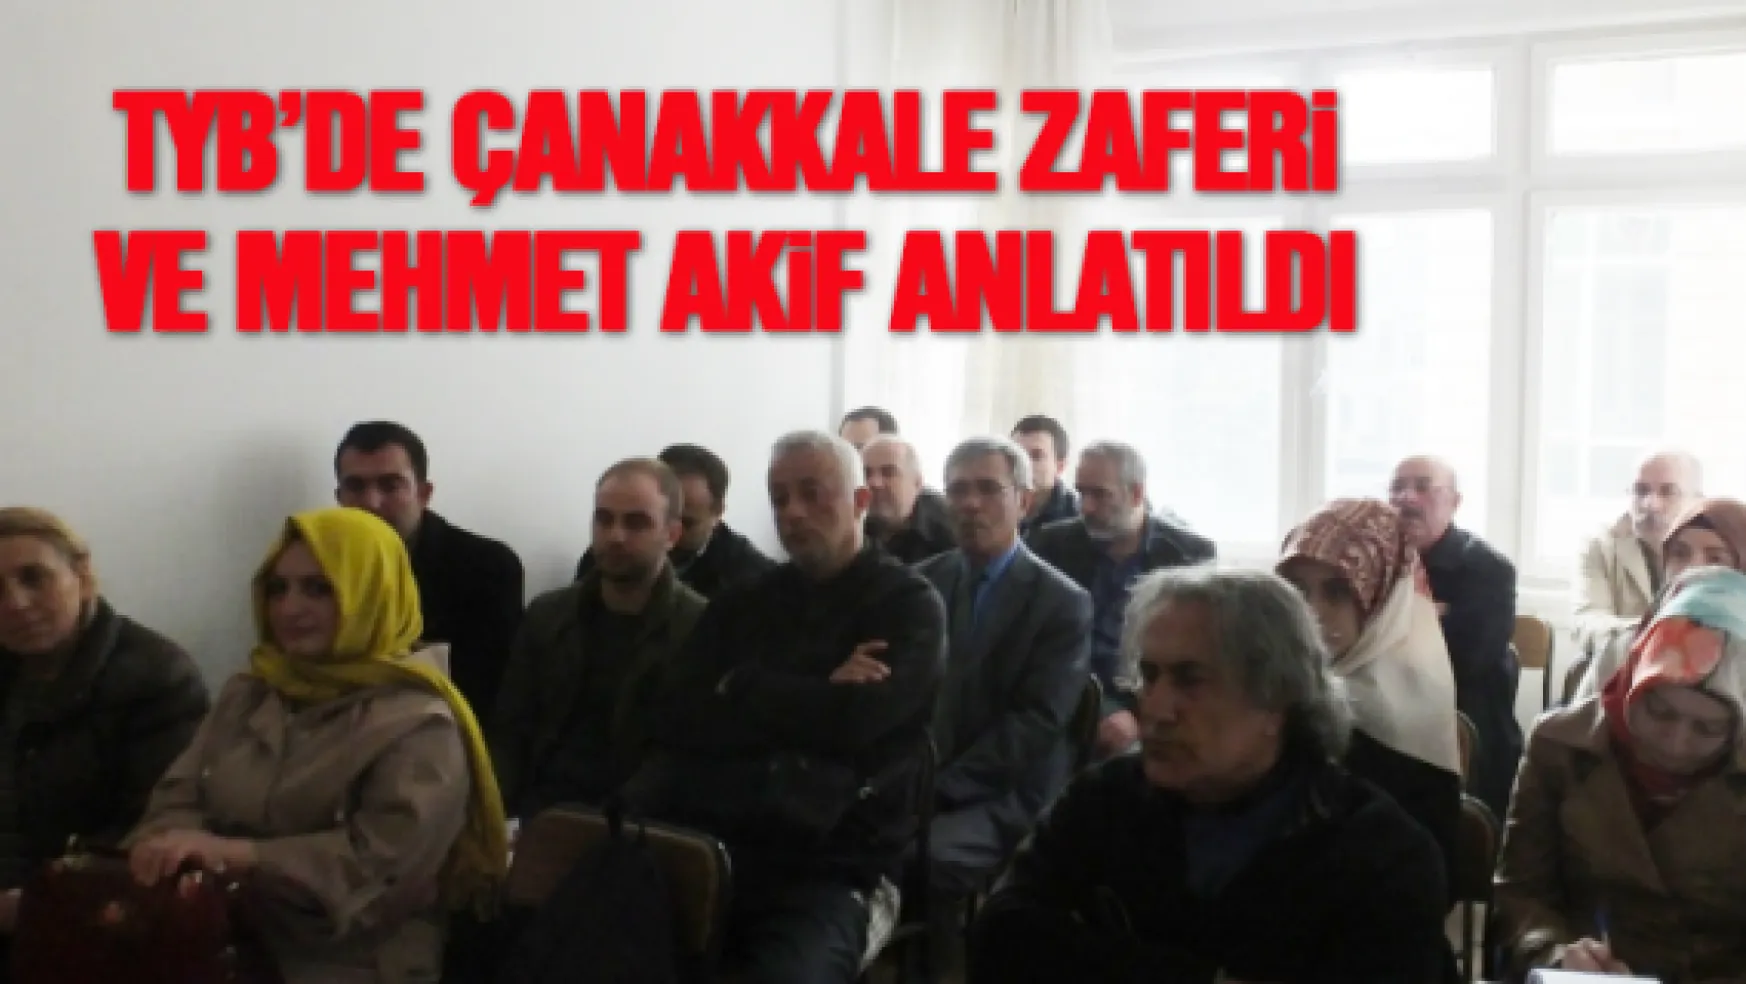 TYB'de Çanakkale Zaferi ve Mehmet Akif anlatıldı